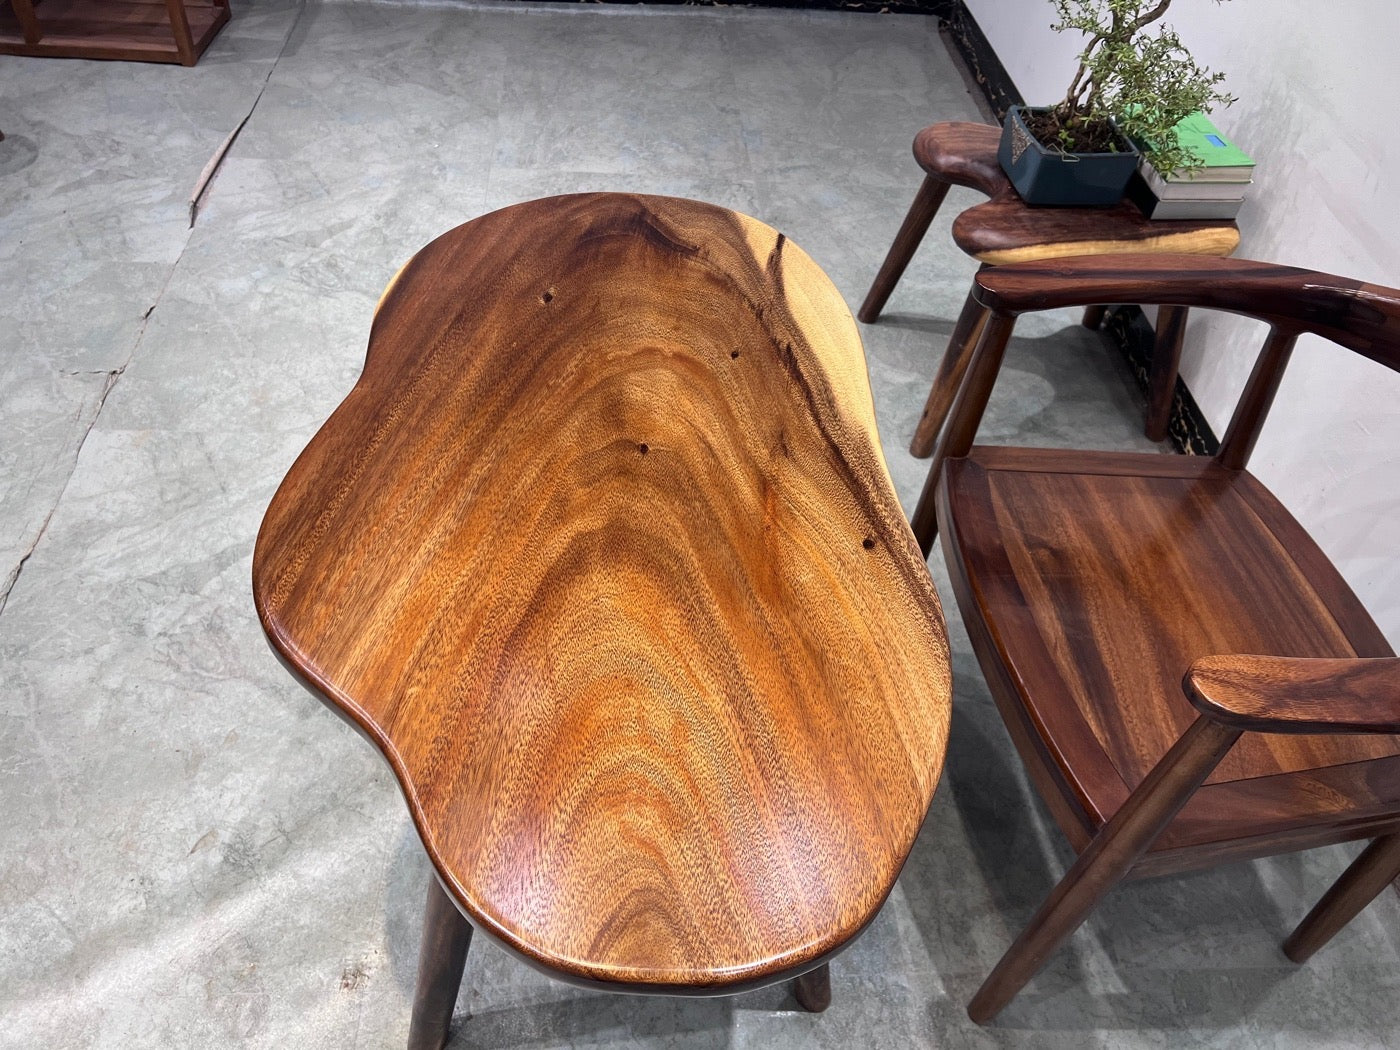 طاولة خارجية من خشب الجوز ذات الحافة الحية، وطاولة قهوة خشبية على شكل سحابة، وشرفة حديقة مقاعد البدلاء